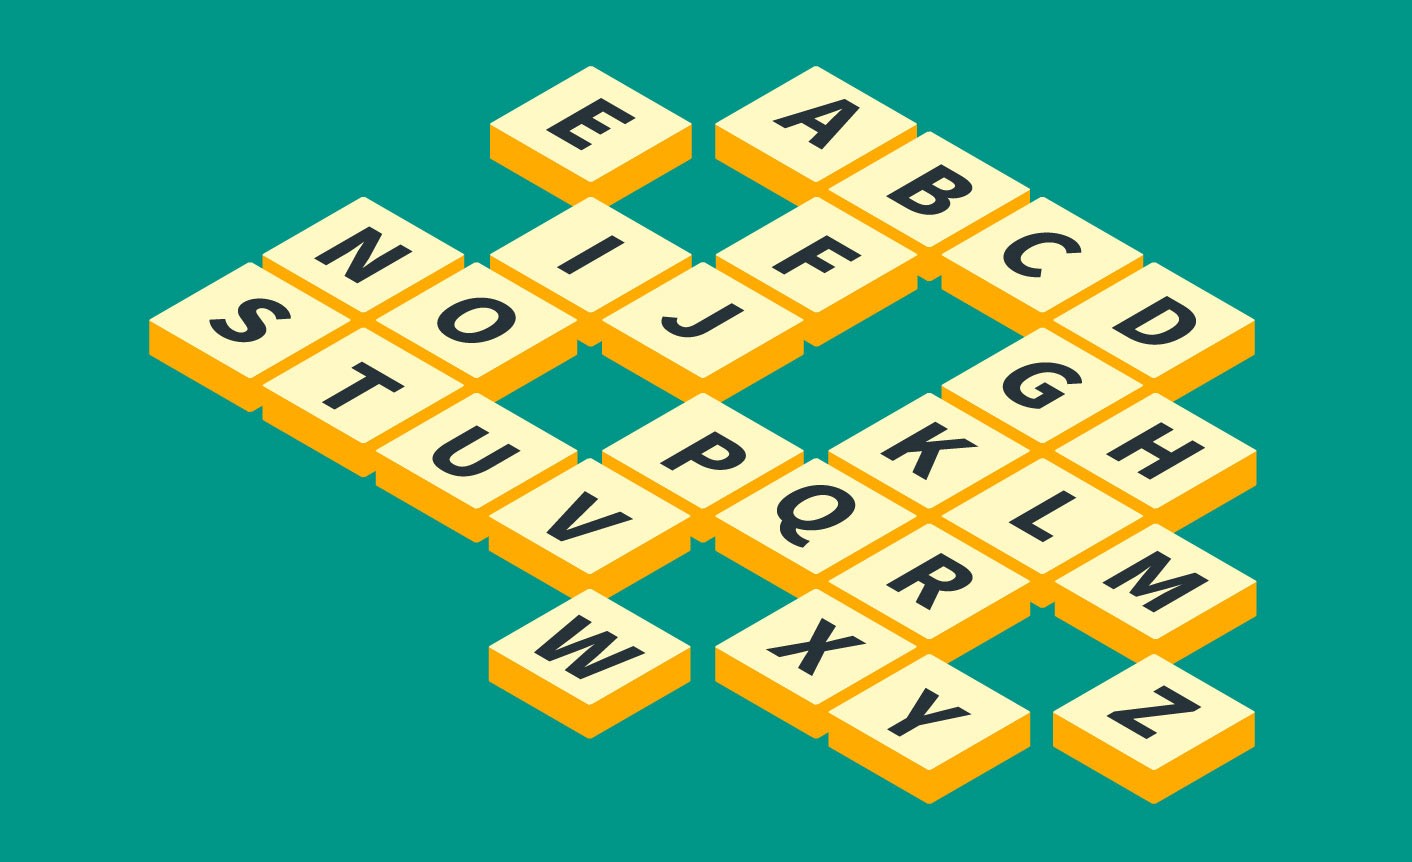 Сума 5 буквы. Word games. Word Puzzle игра. Словесные головоломки. Keywords игра.